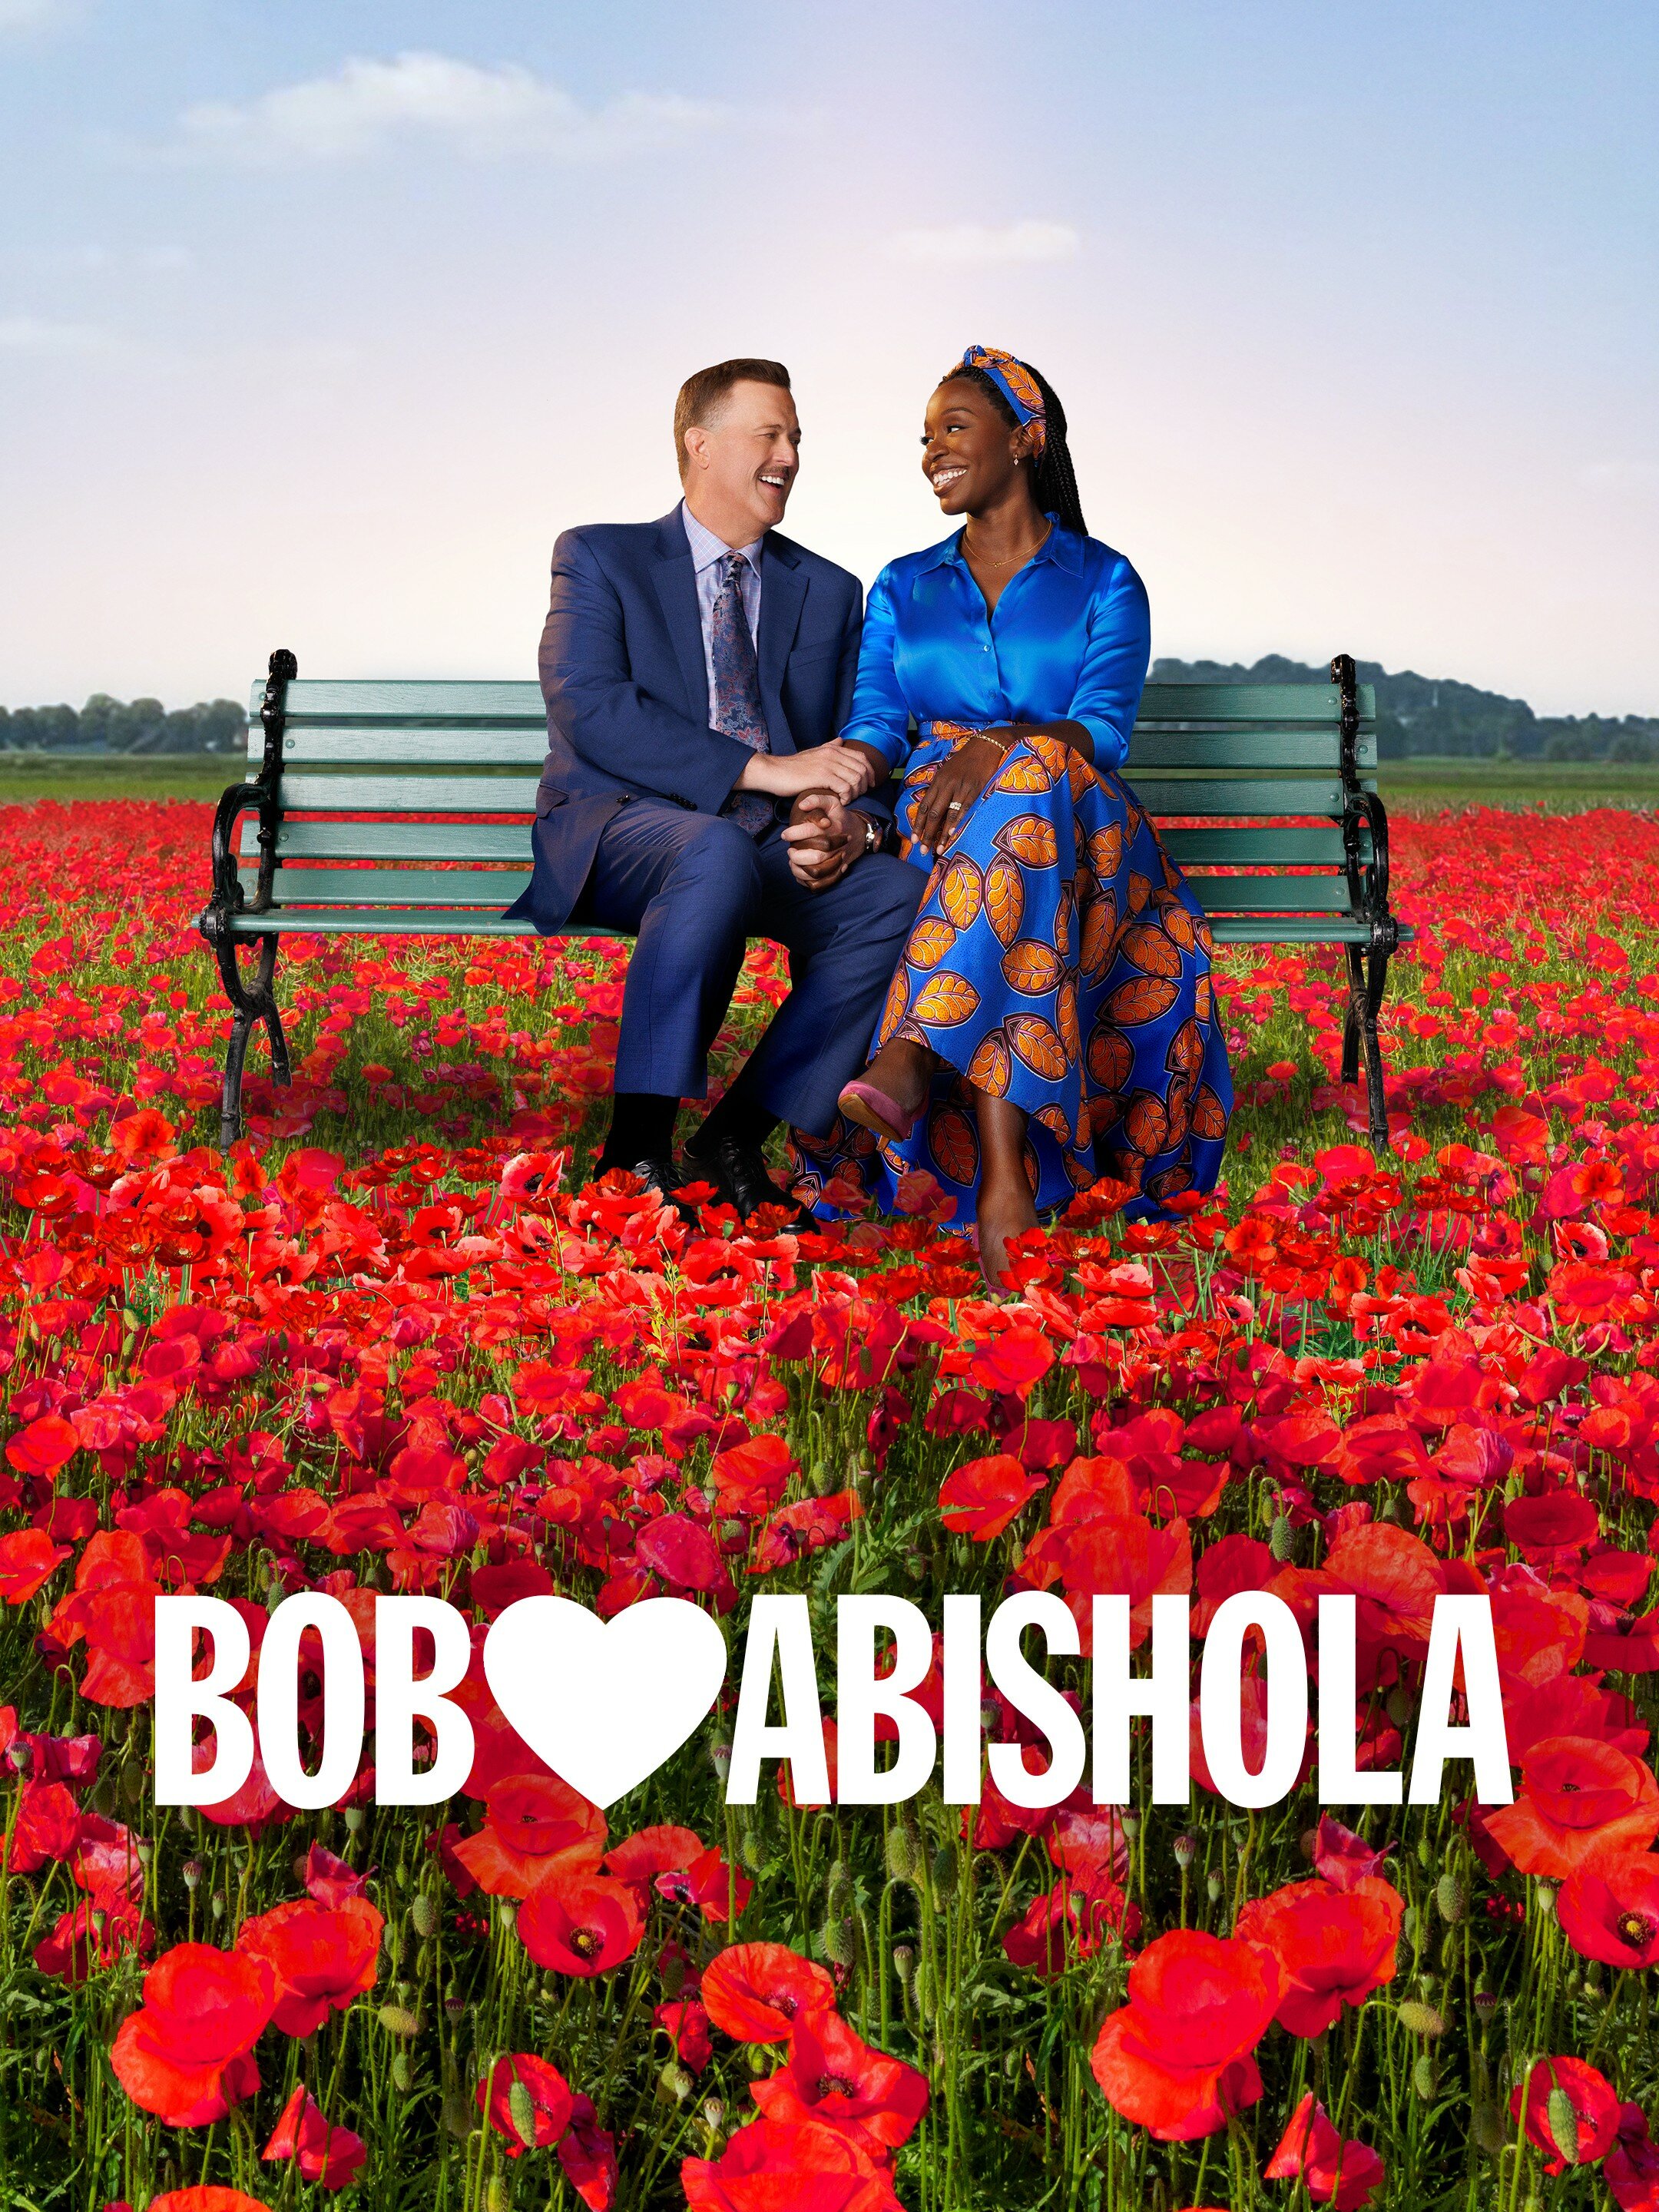 Bob ♥ Abishola ne zaman